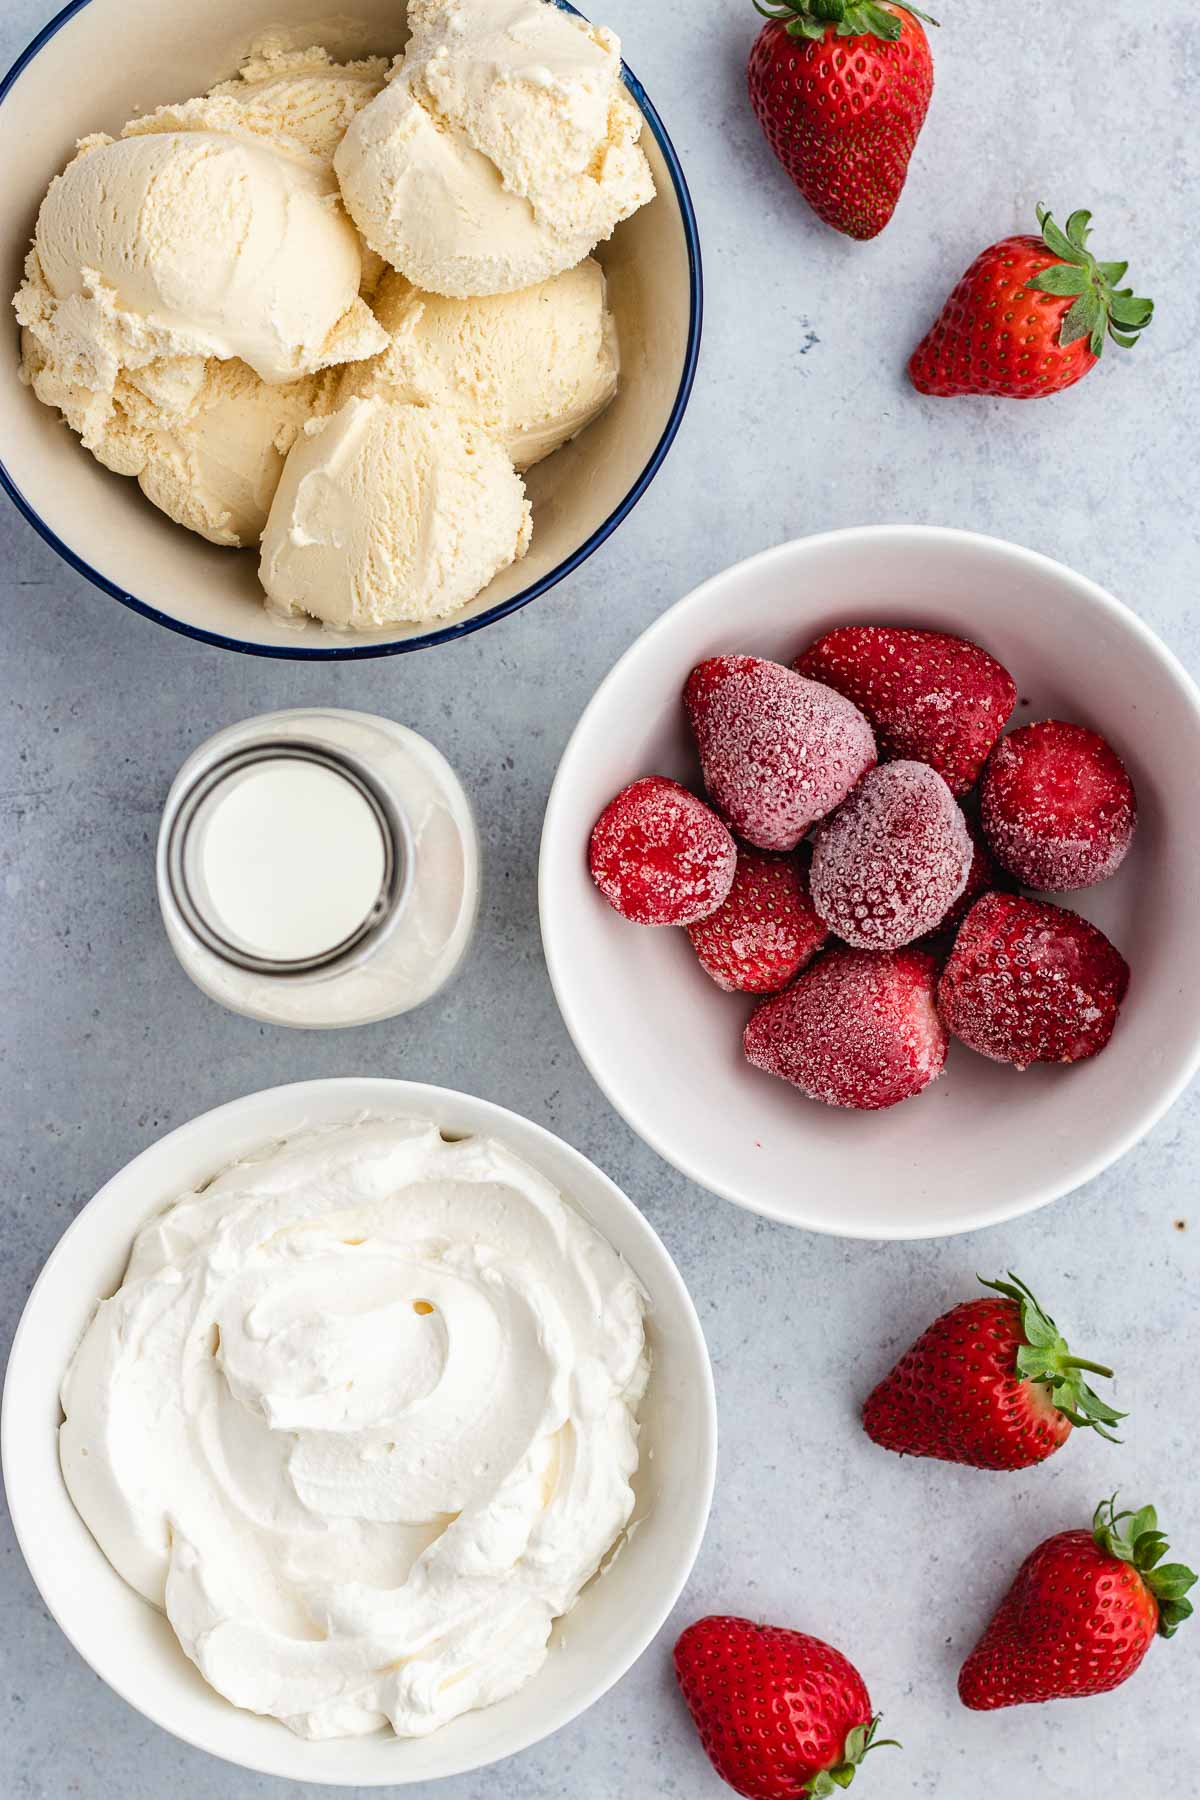 Strawberry Milkshake ingredients in bowls